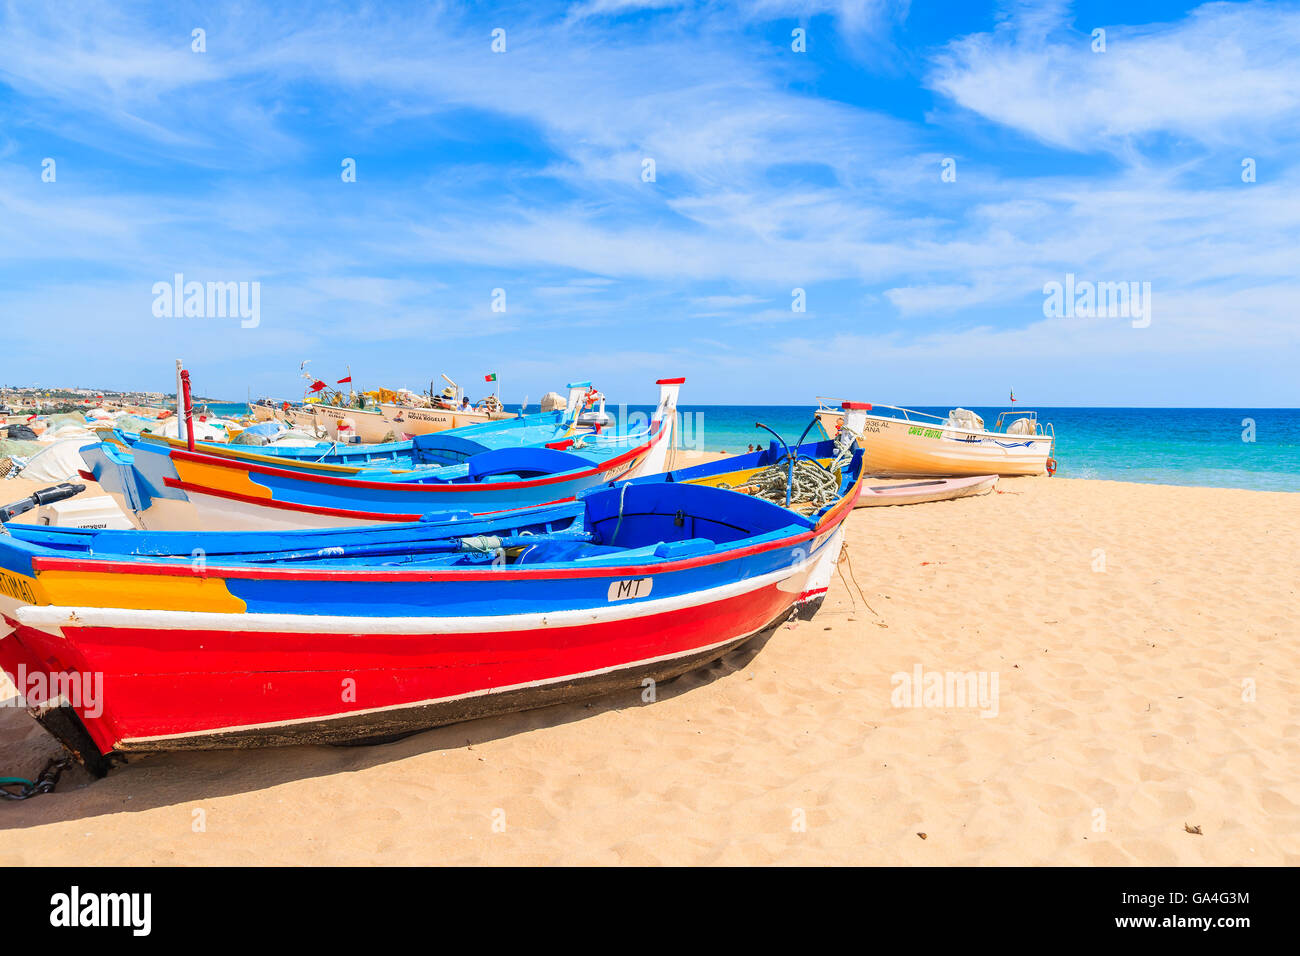 ARMACAO DE PERA Beach, Portogallo - 17 Maggio 2015: tipico colorate barche di pescatori sulla spiaggia di Armacao de Pera villaggio costiero. Regione di Algarve è di vacanza popolare destinazione turistica sulla costa del Portogallo Foto Stock